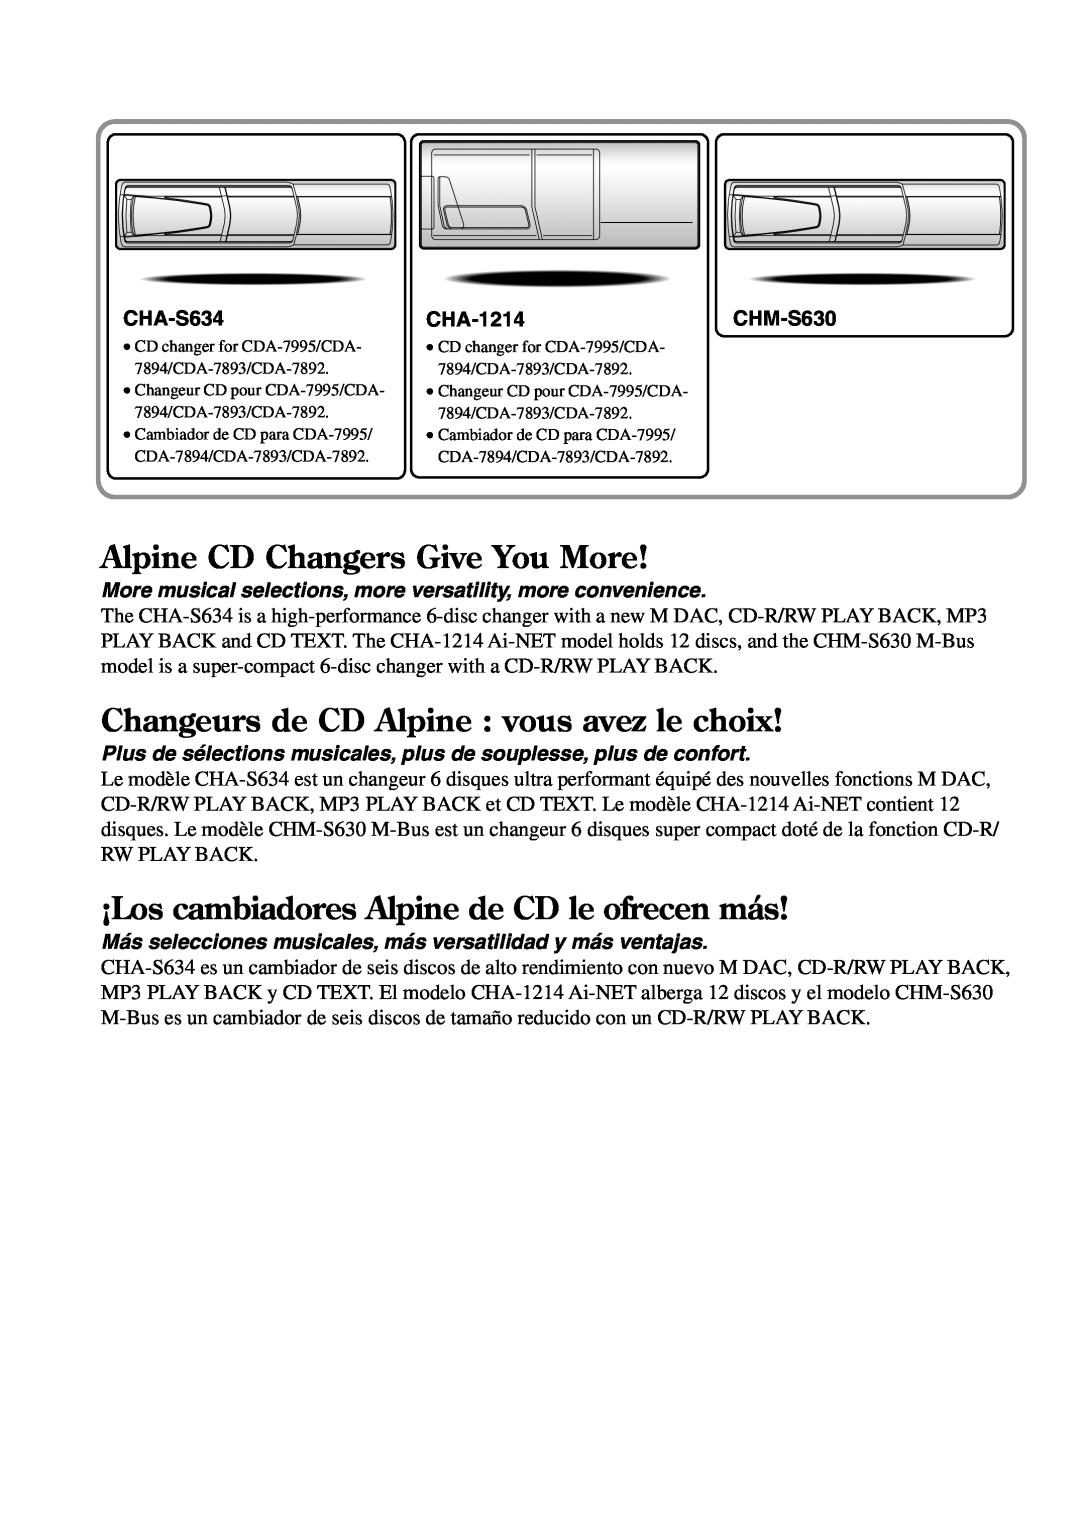 Alpine CDA-7892 Alpine CD Changers Give You More, Changeurs de CD Alpine vous avez le choix, CHA-S634, CHA-1214CHM-S630 